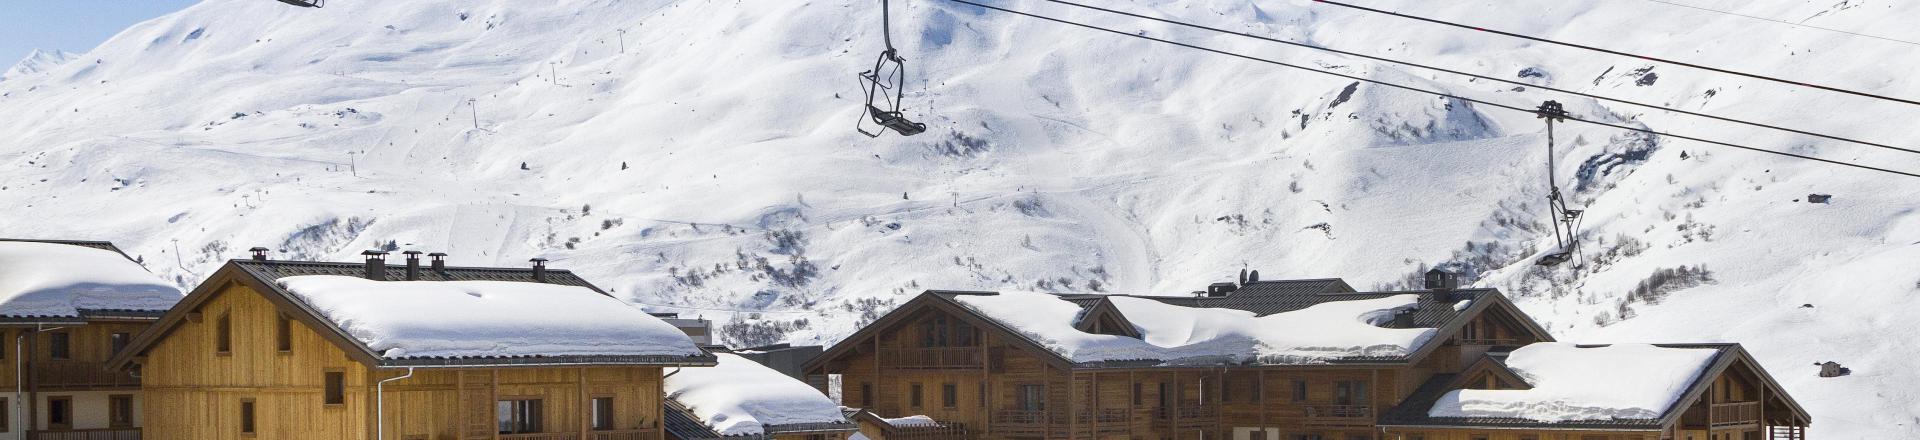 Location au ski Résidence Club MMV le Coeur des Loges - Les Menuires - Extérieur hiver